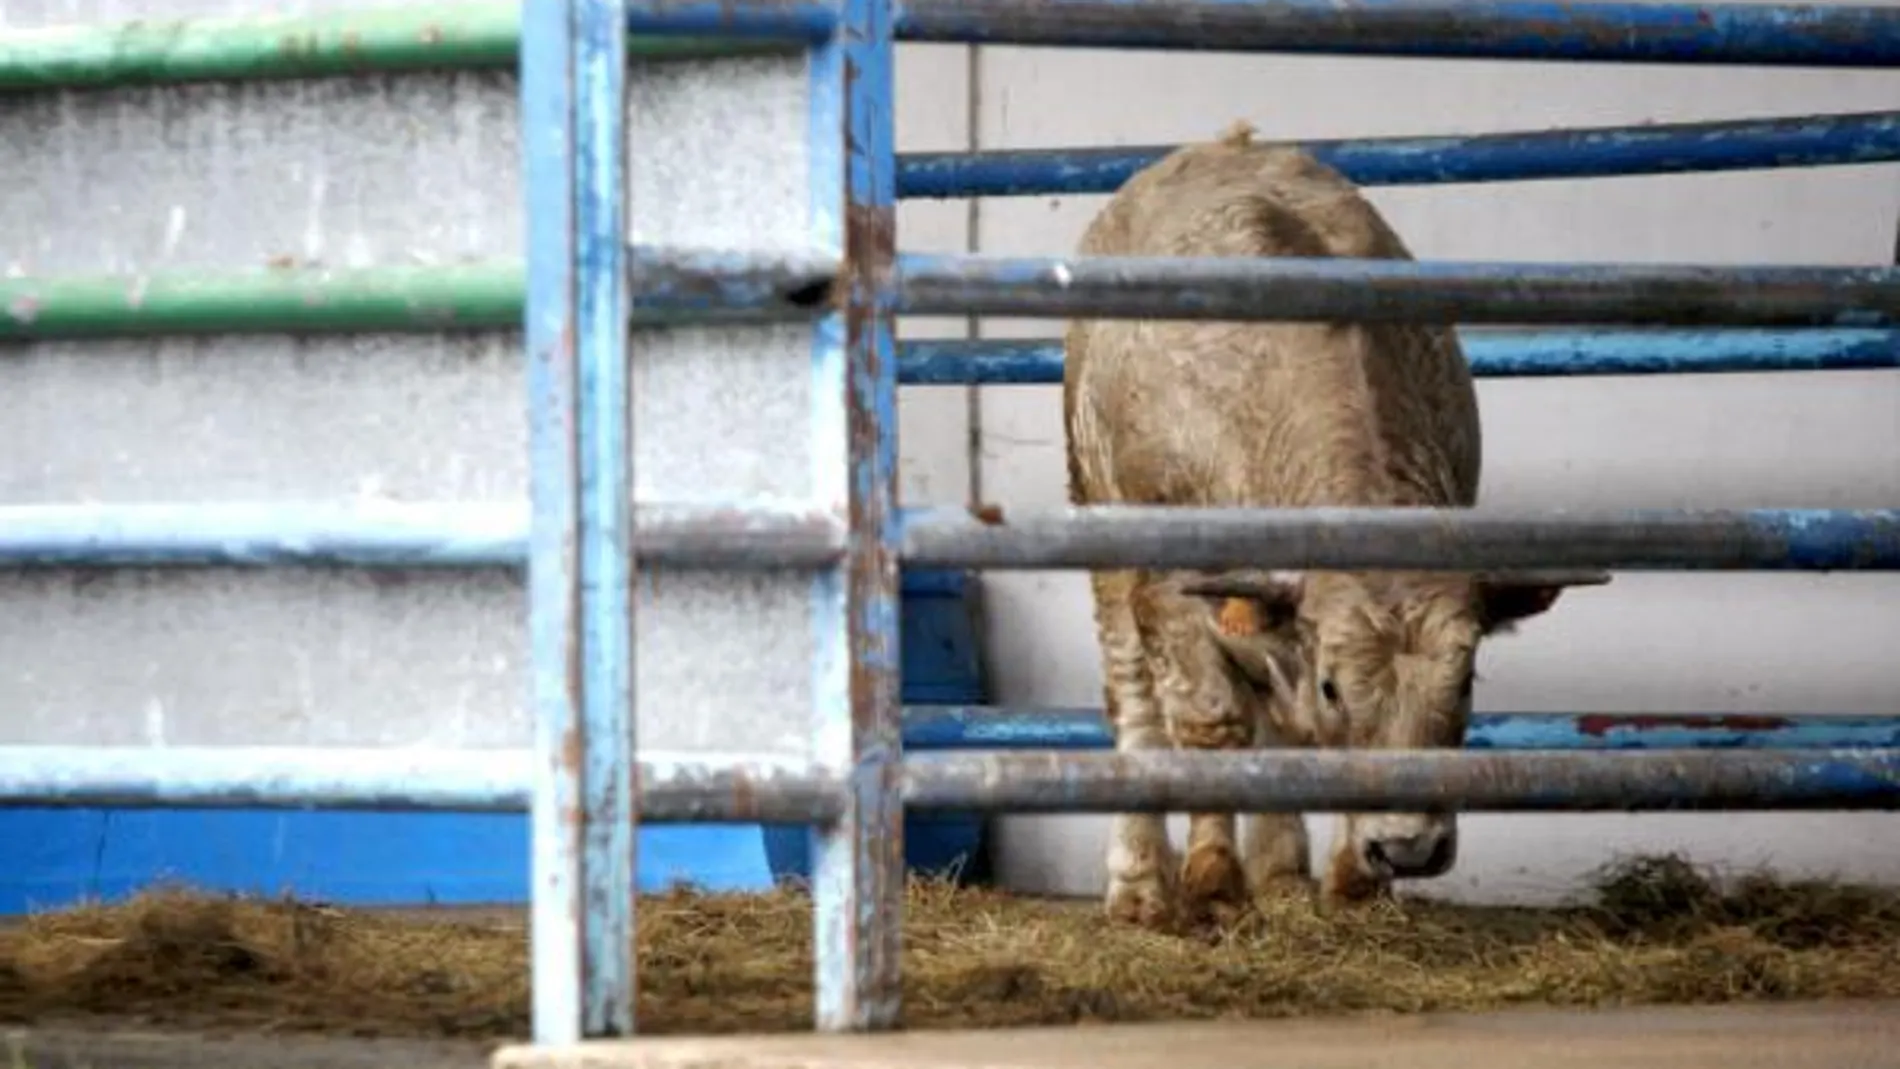 Ante la falta de personal cualificado en mataderos, los productores de carne de vacuno están mandado a los animales a Irlanda para su matanza